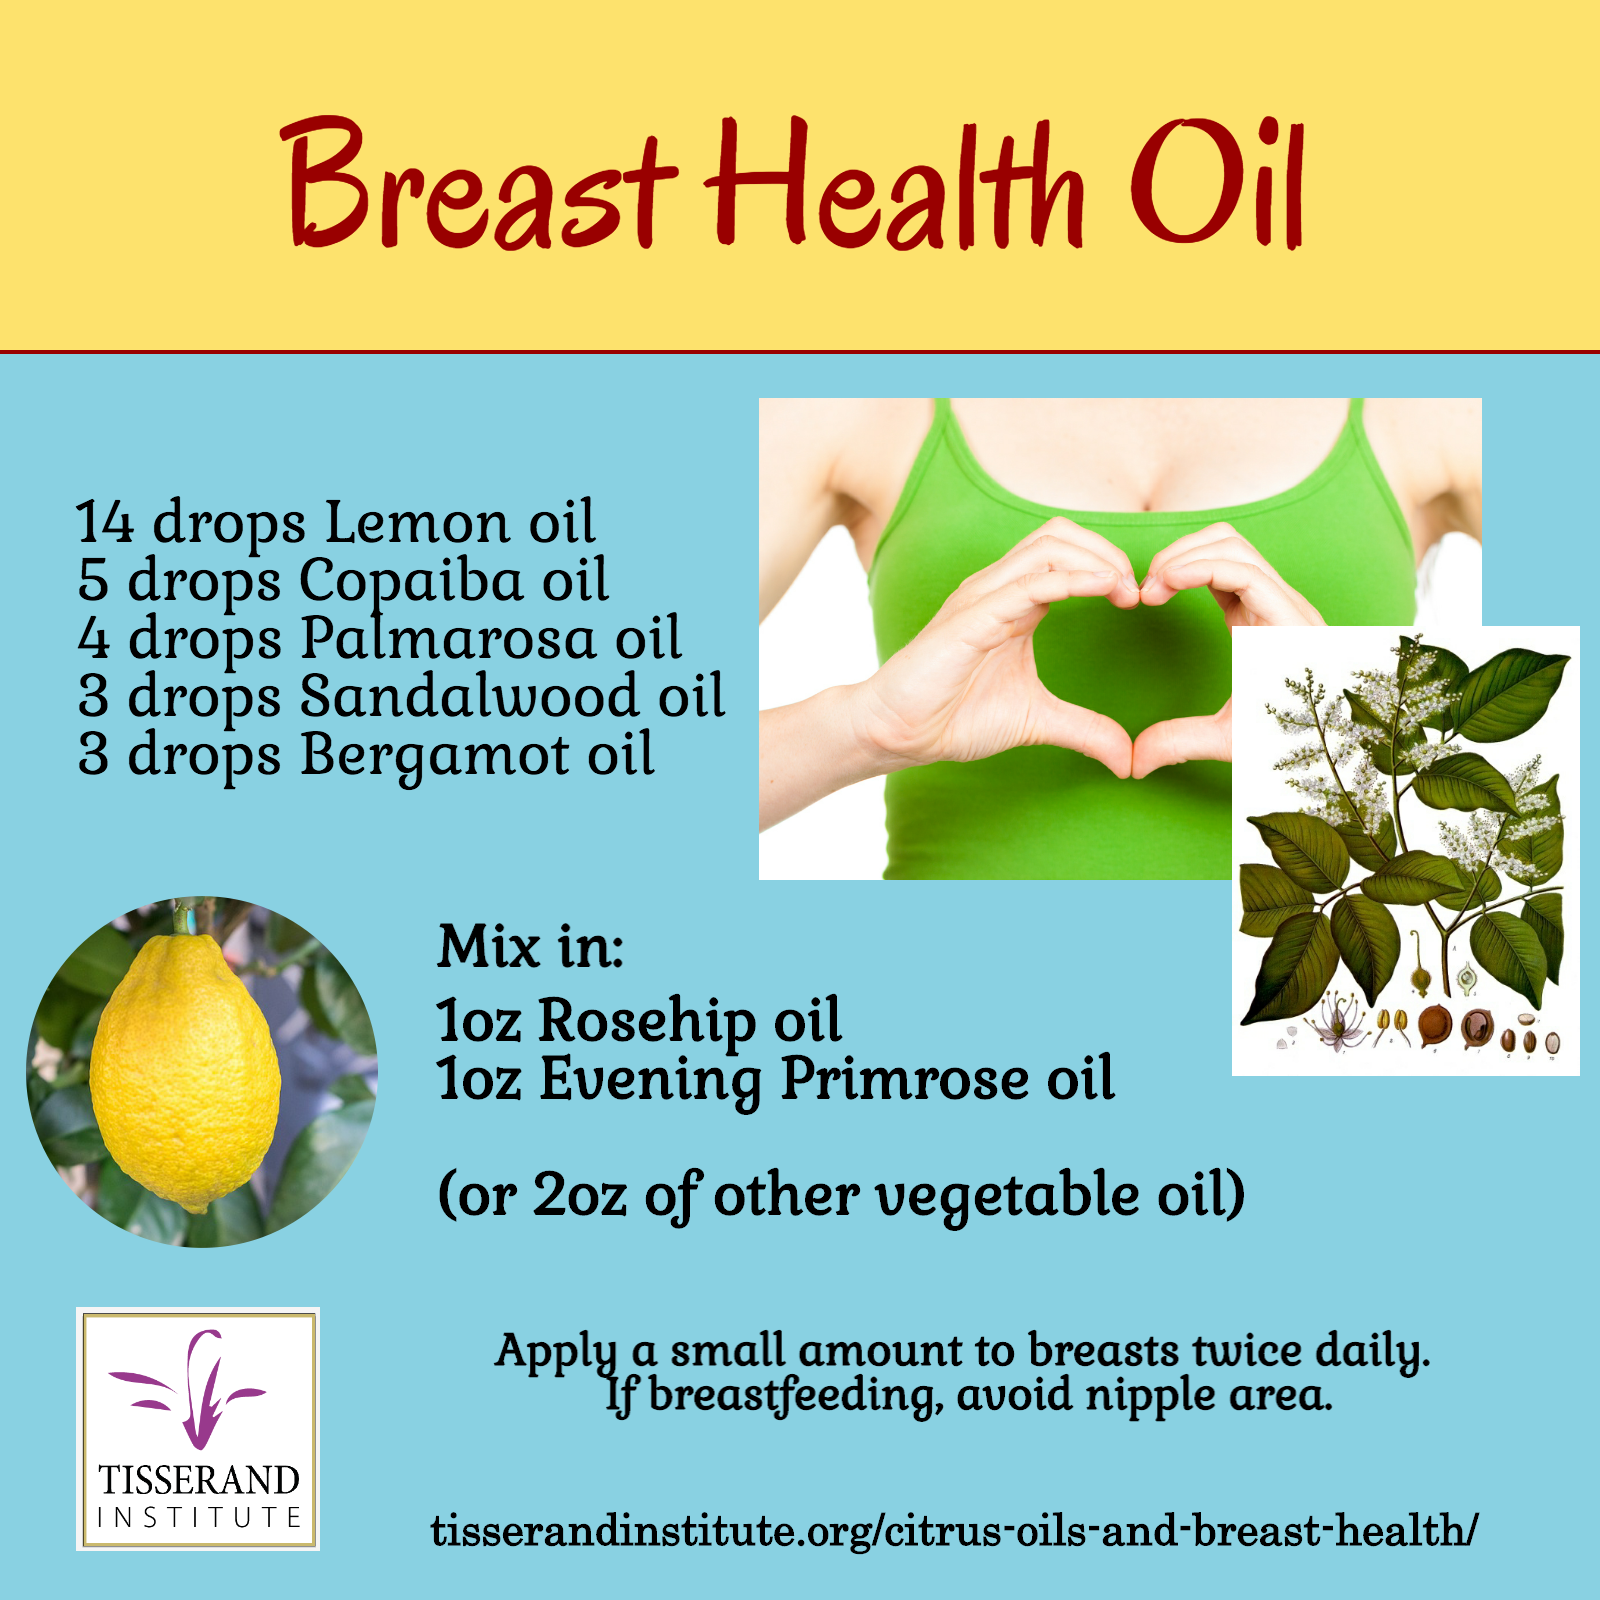 Breast Health Oil: Prevention